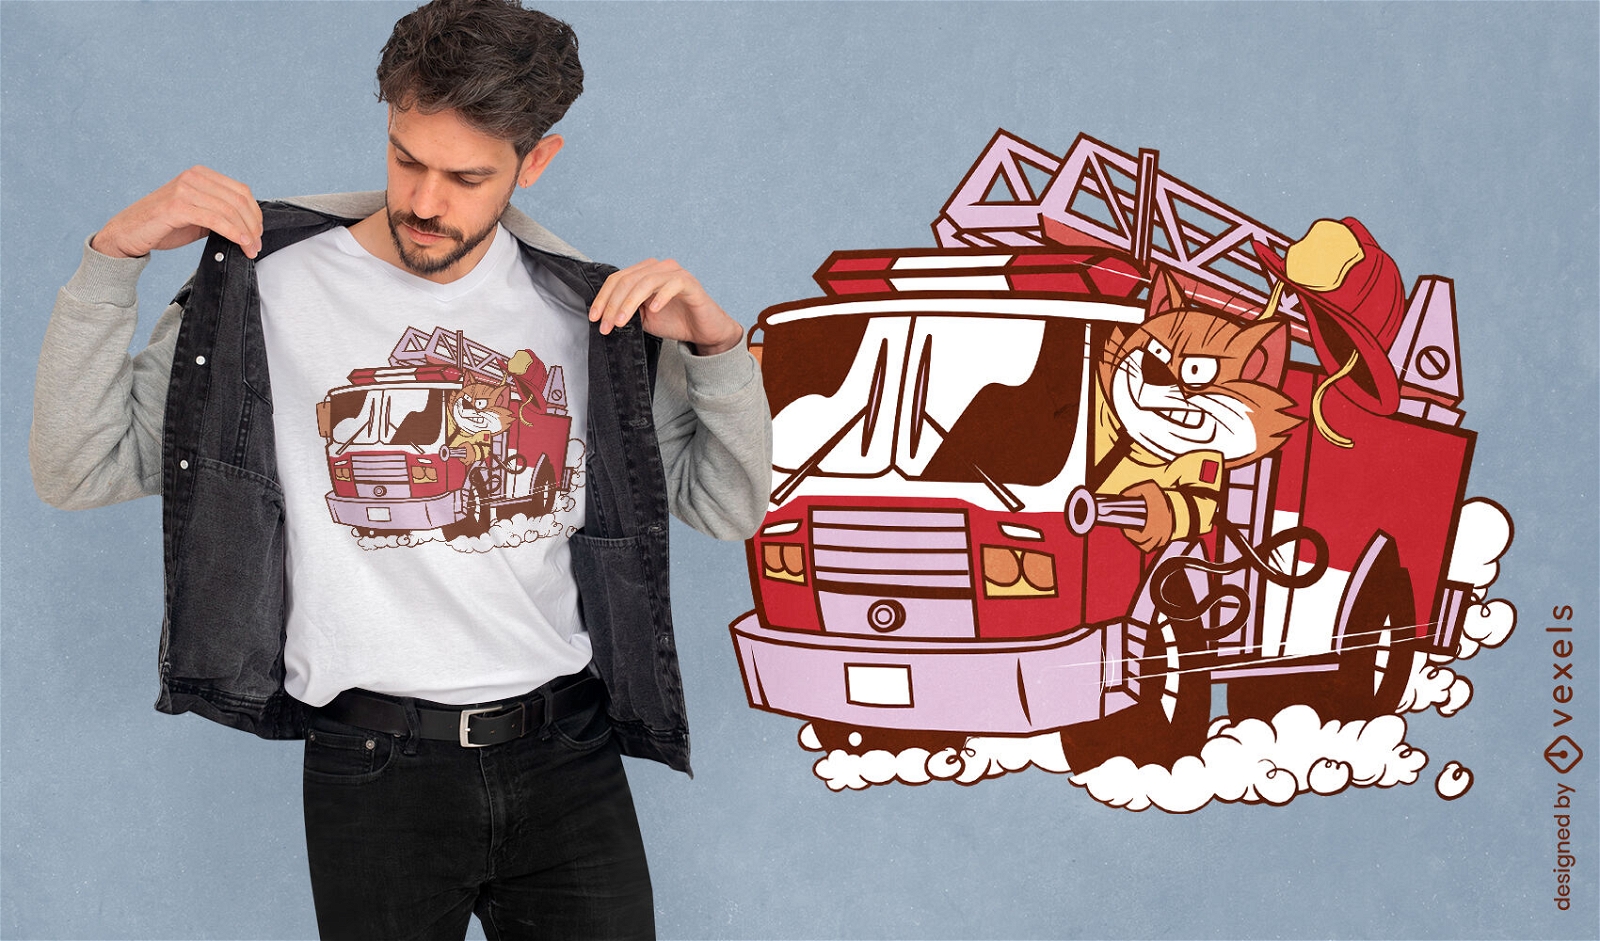 Firefighter cat on truck t-shirt design